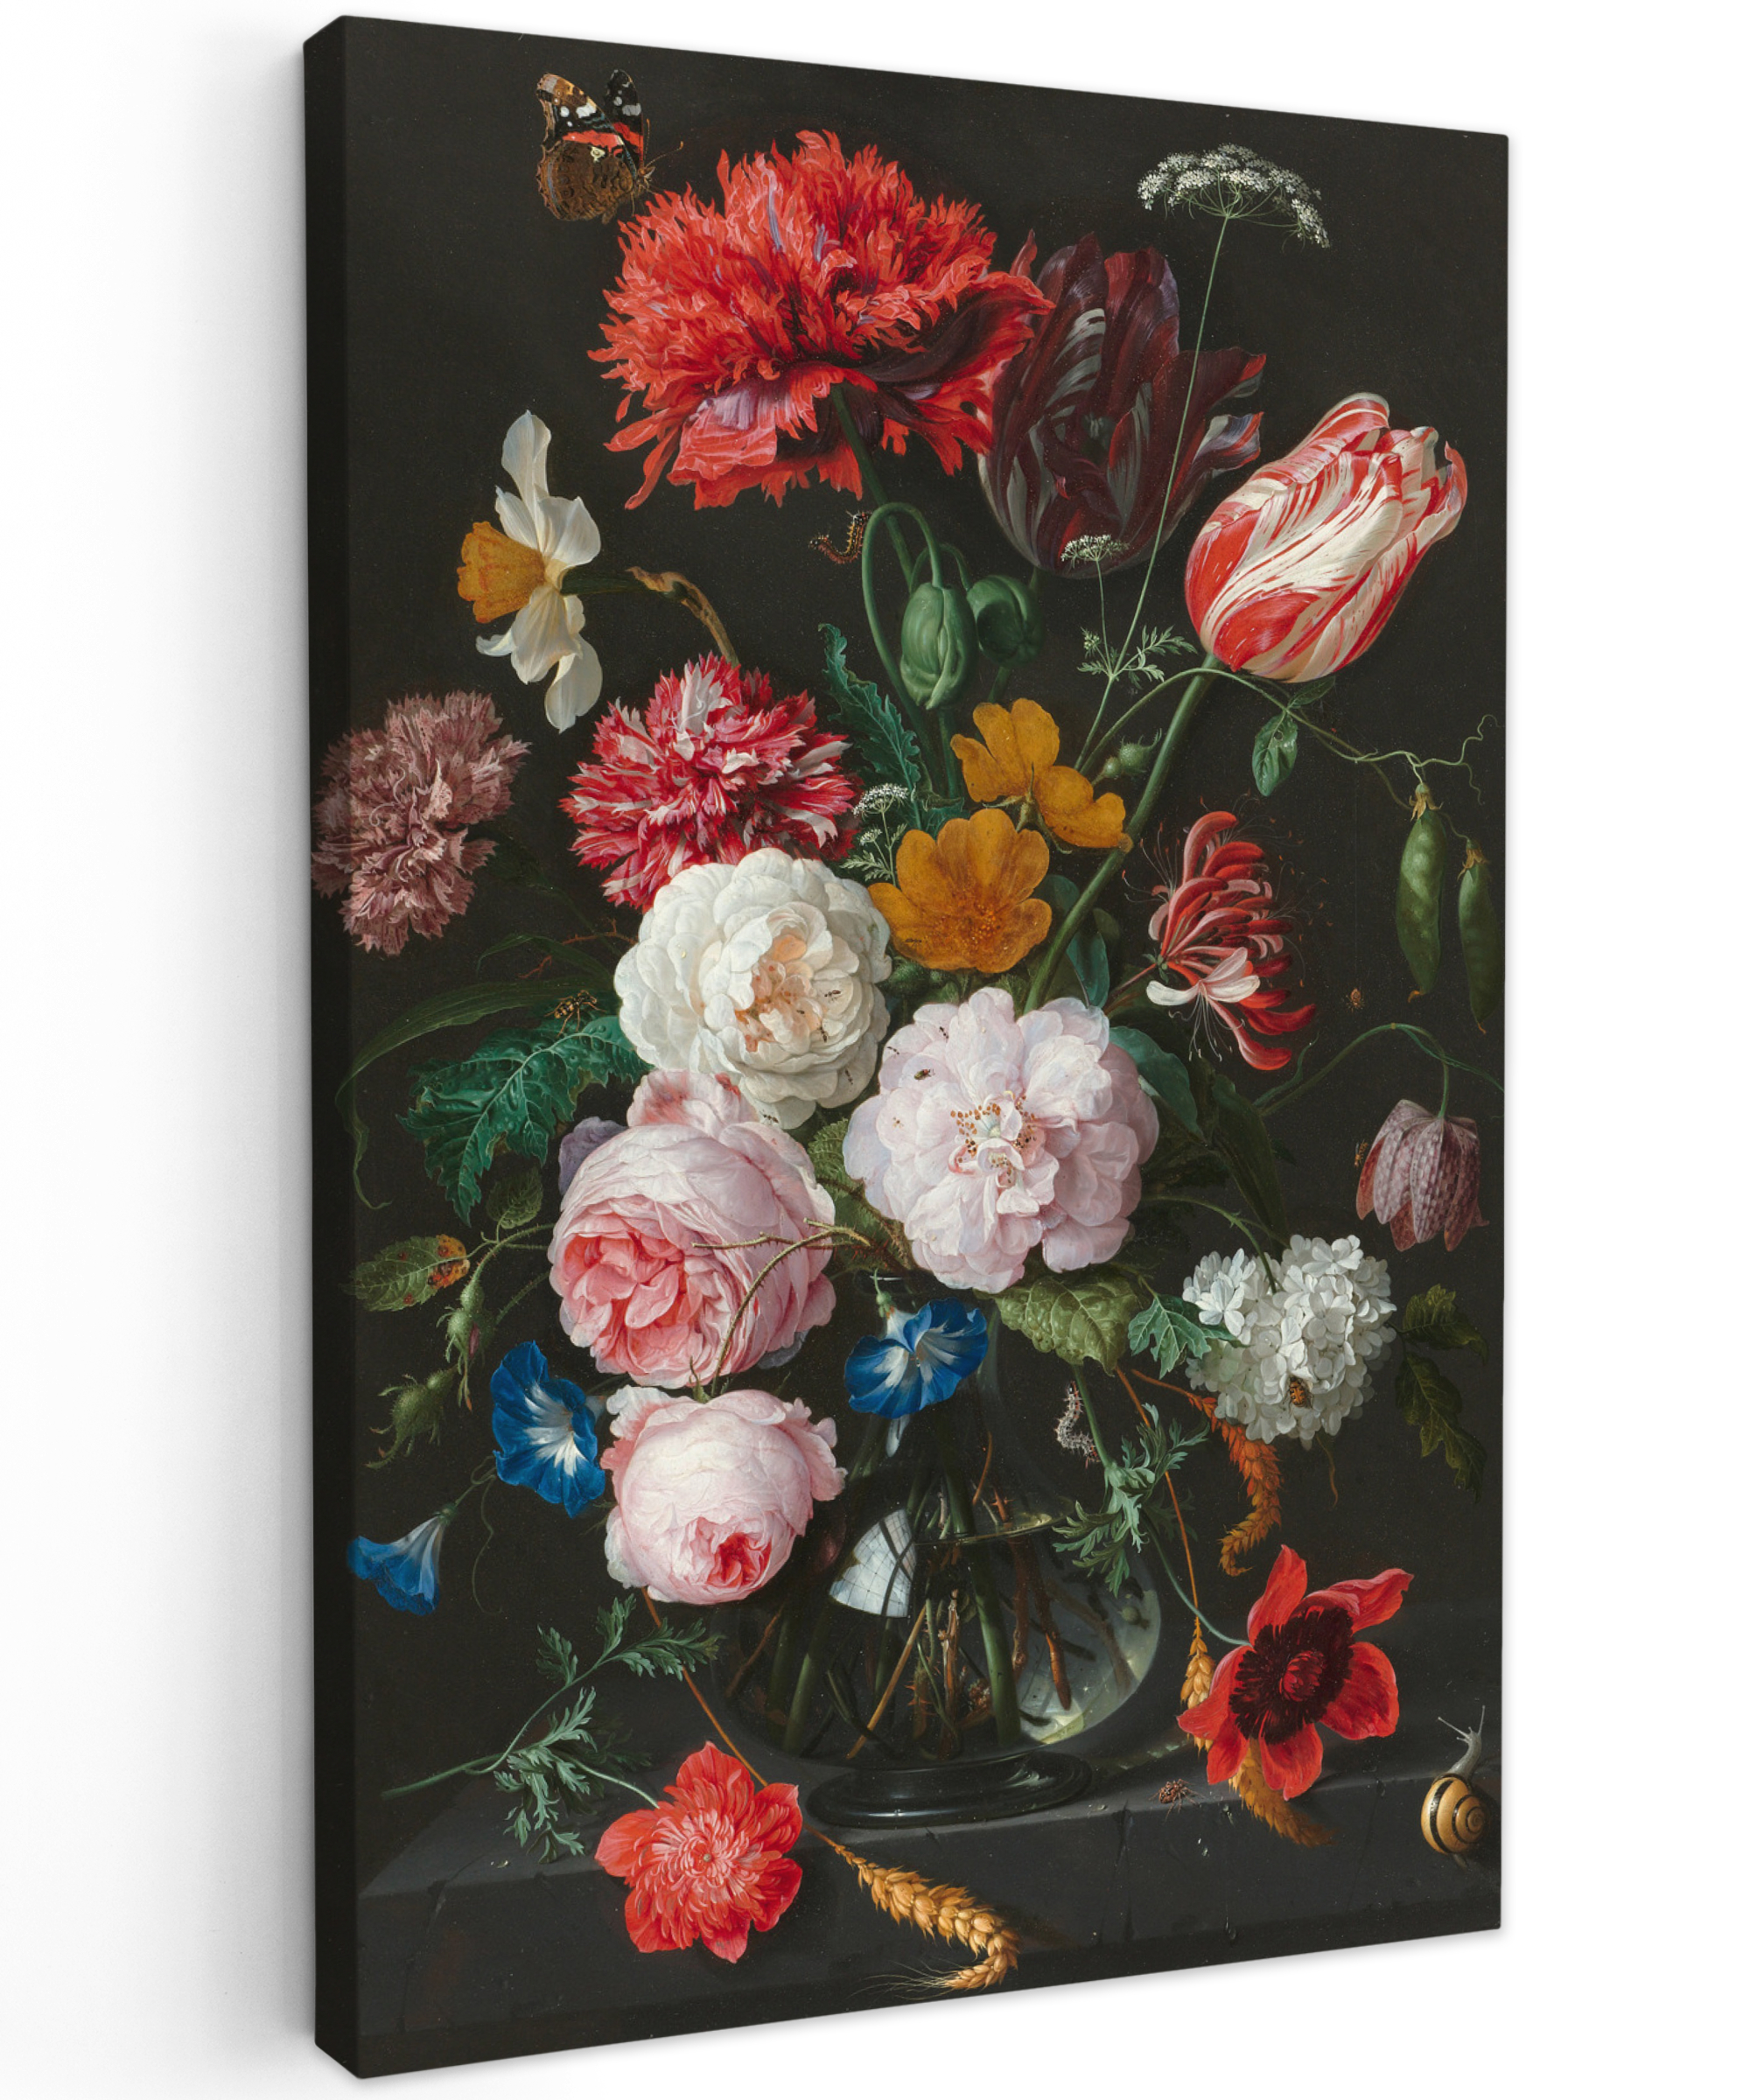 Leinwandbild - Stillleben mit Blumen in einer Glasvase - Gemälde von Jan Davidsz. de Heem